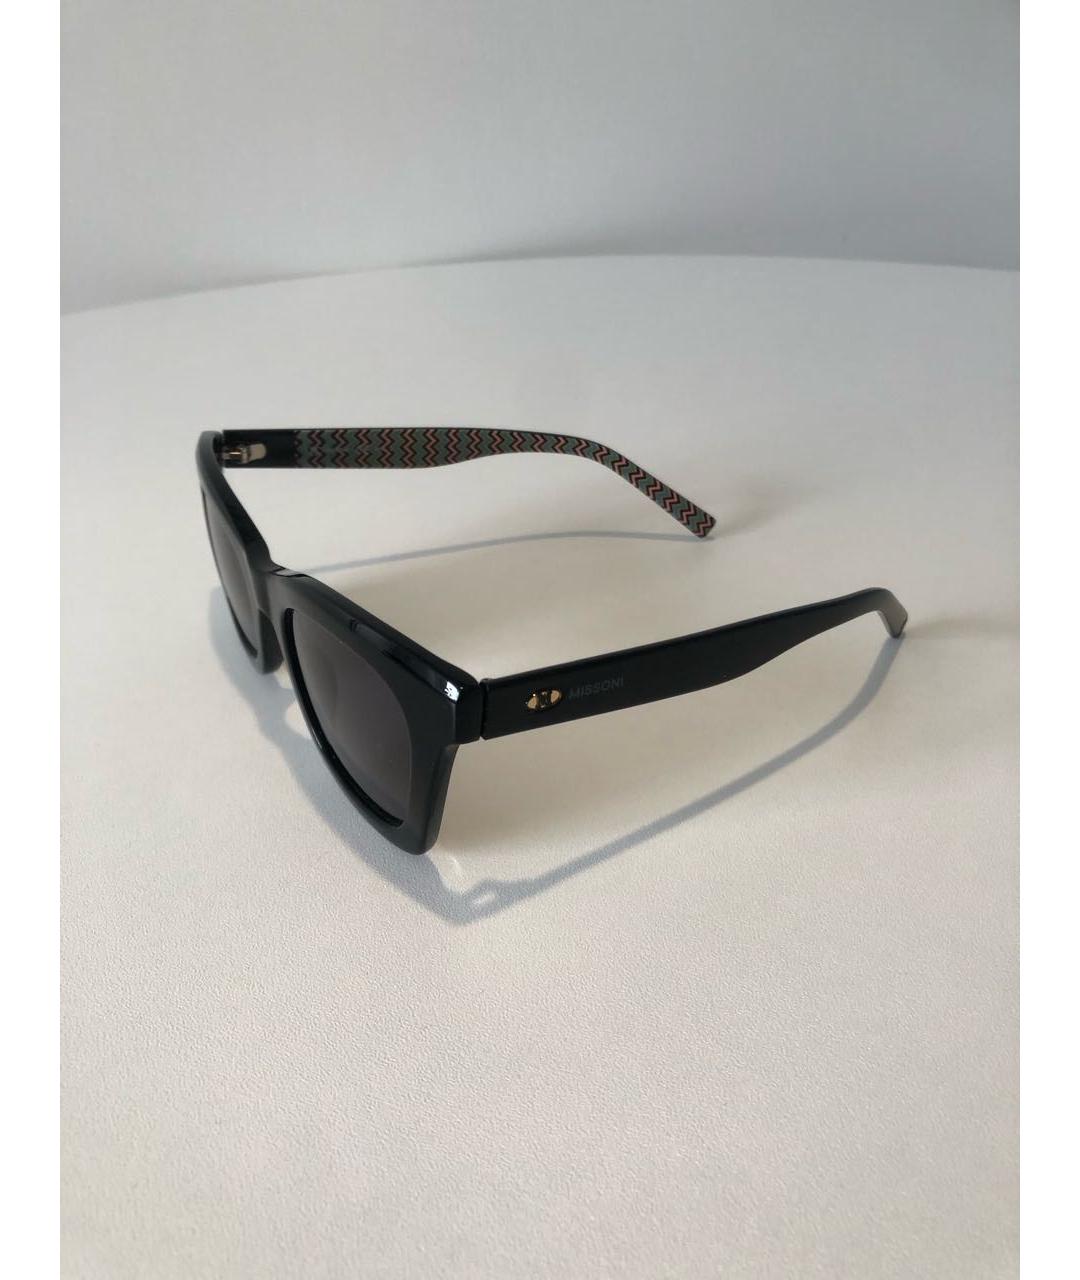 MISSONI Черные пластиковые солнцезащитные очки, фото 2